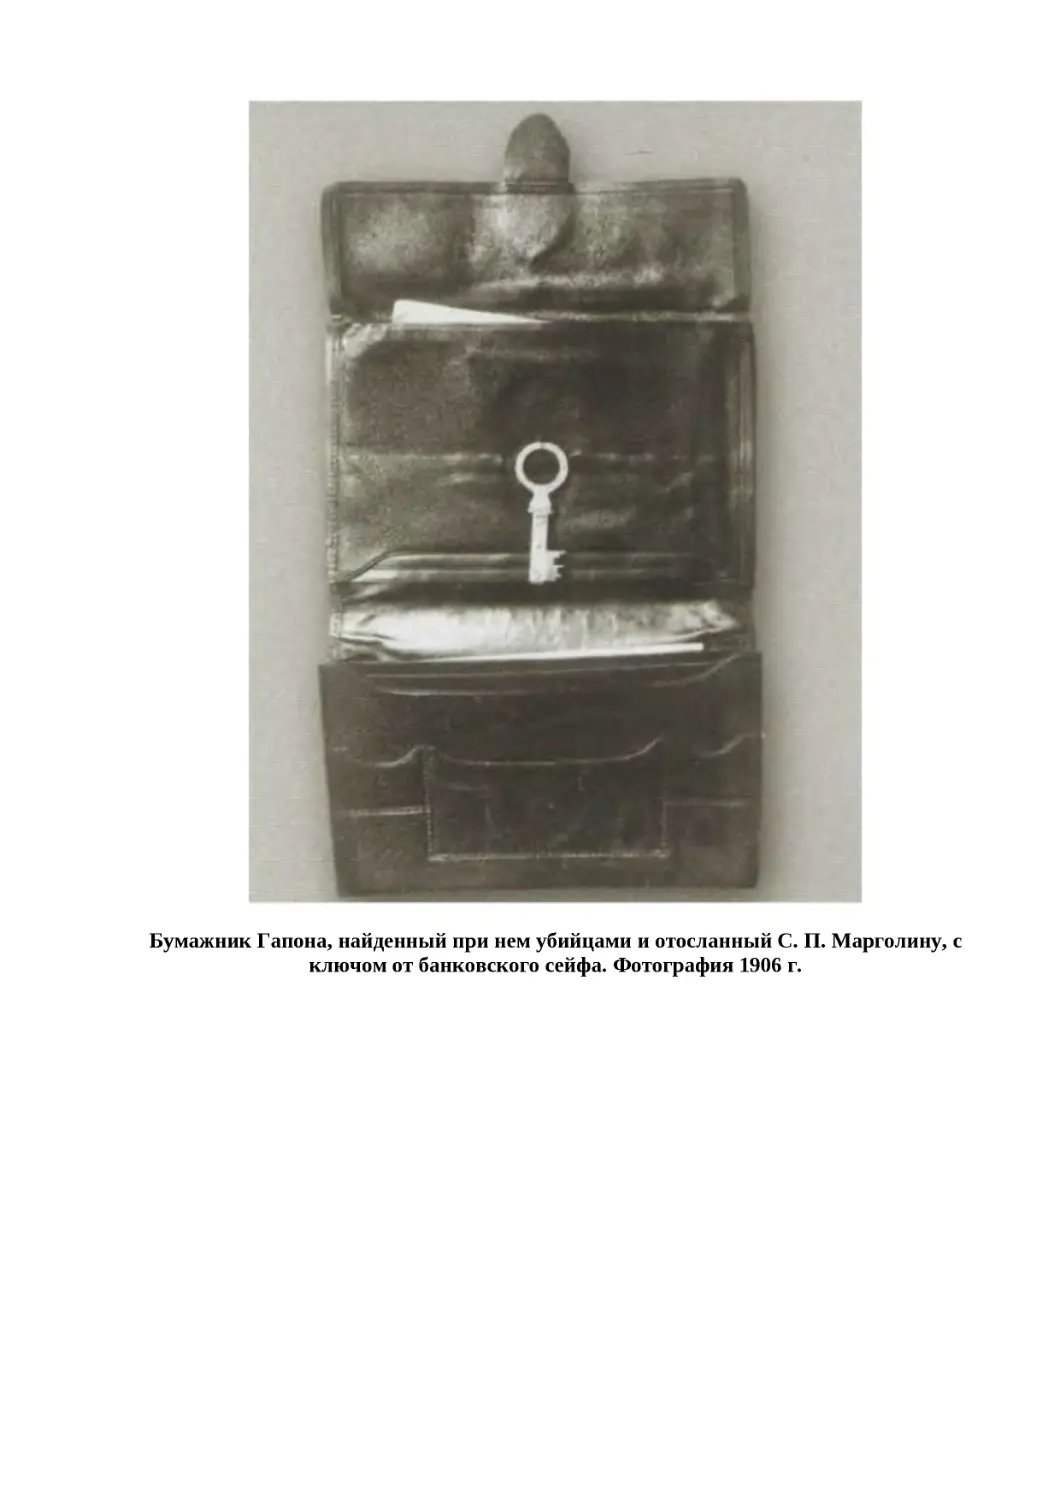 "
﻿Бумажник Гапона, найденный при нем убийцами и отосланный С. П. Марголину, с ключом от банковского сейфа. Фотография 1906 г